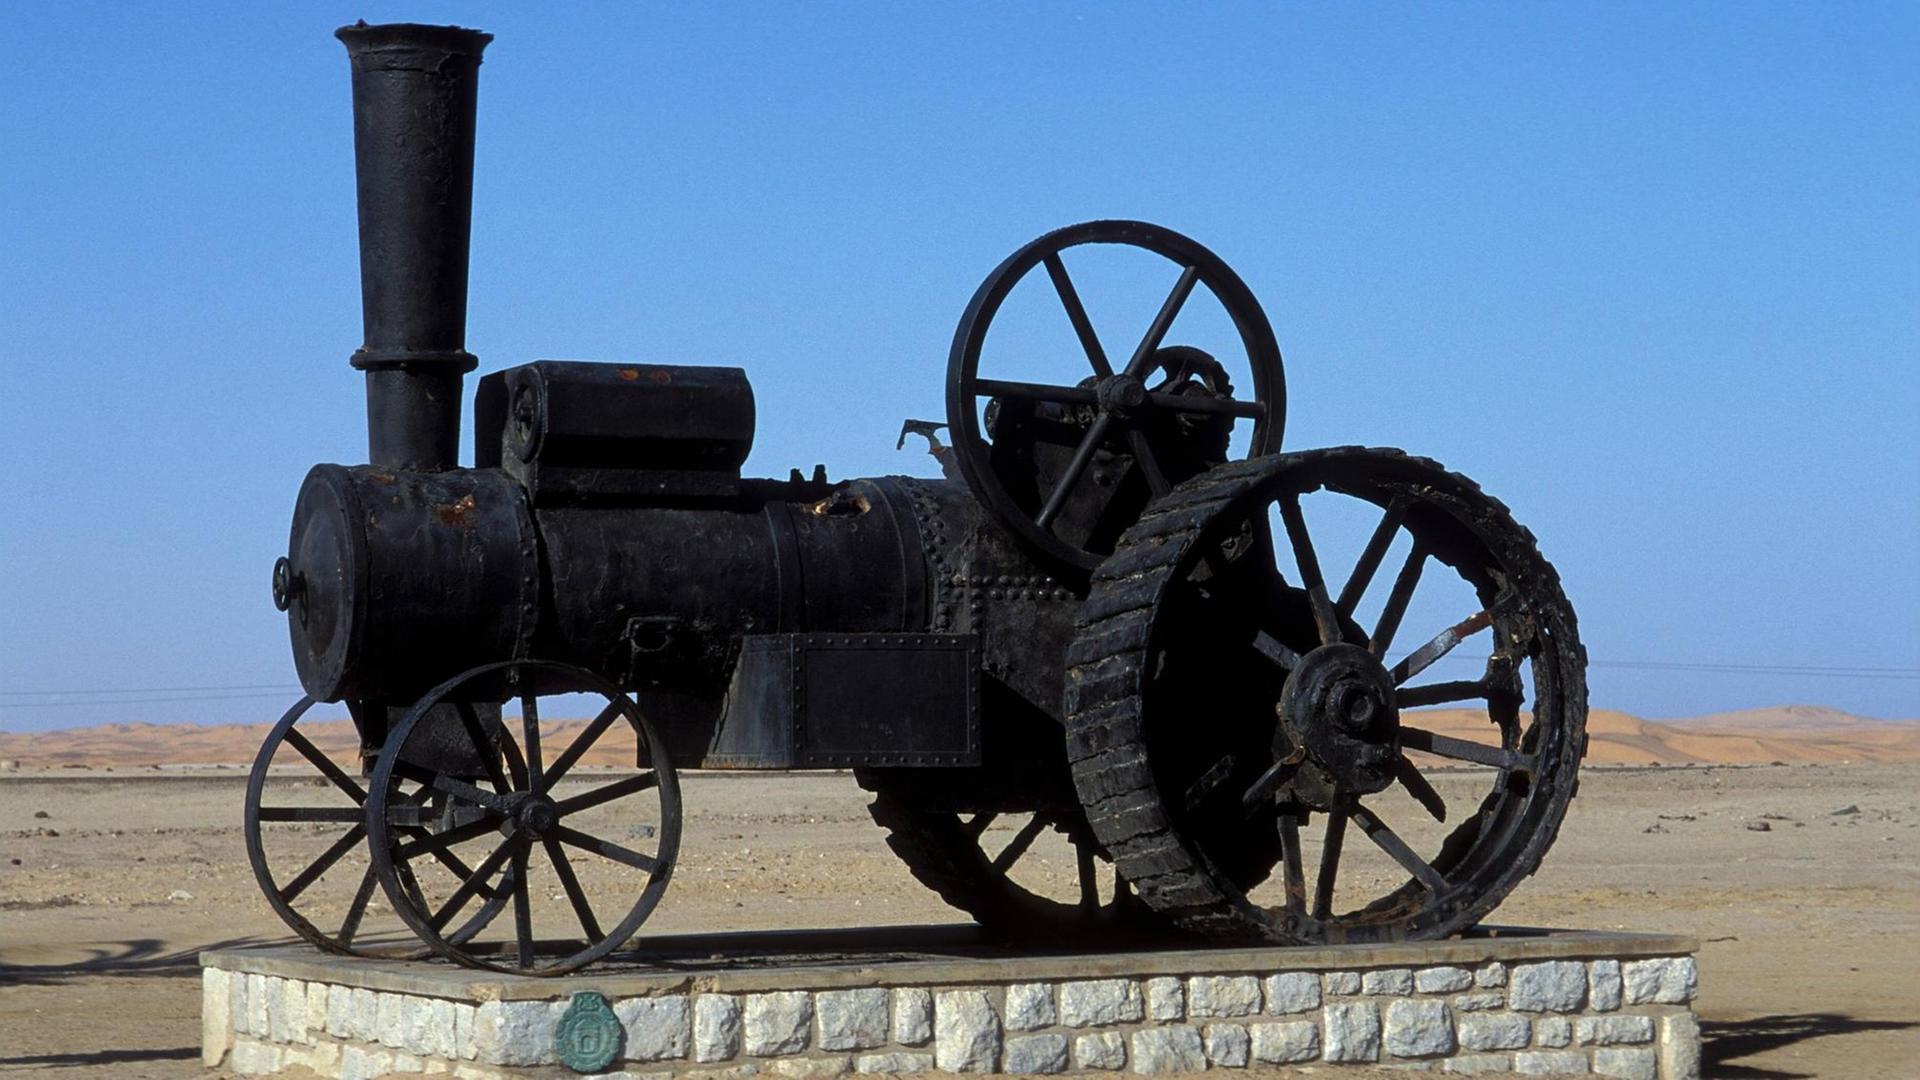 Die Dampflokomotive "Der schwarze Martin Luther" in der Namib-Wüste. Sie ist zum Wahrzeichen der namibischen Küstenstadt Swakopmund geworden.